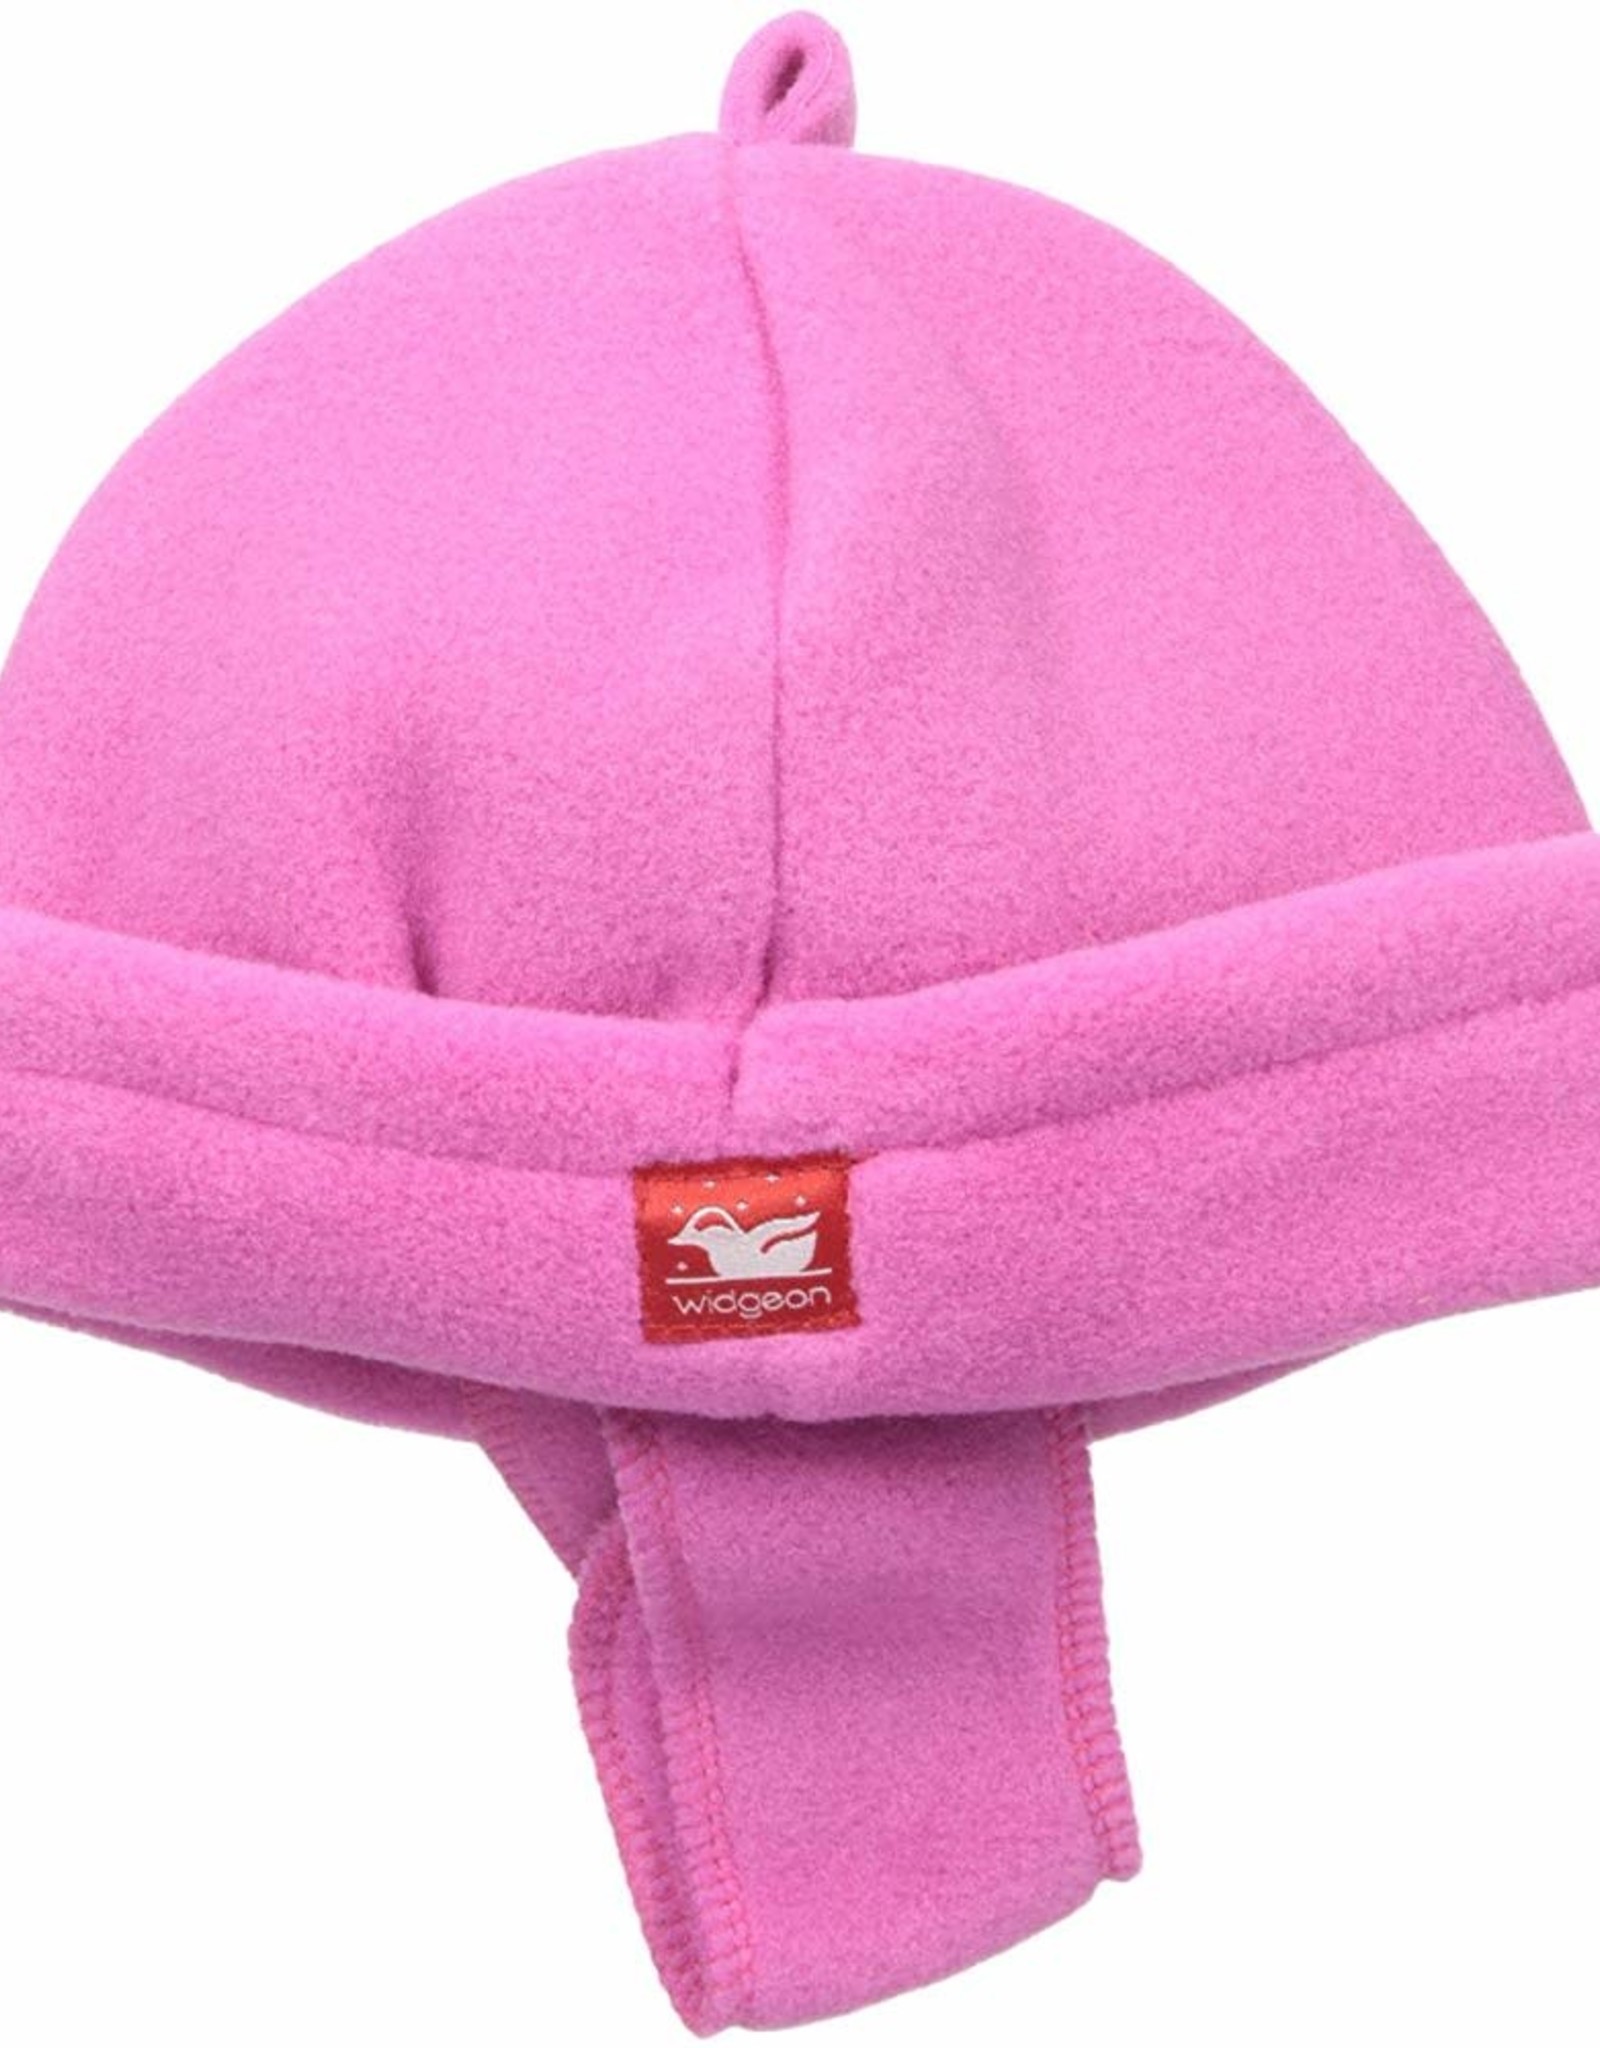 Widgeon Warm Plus Beanie  Bright Pink